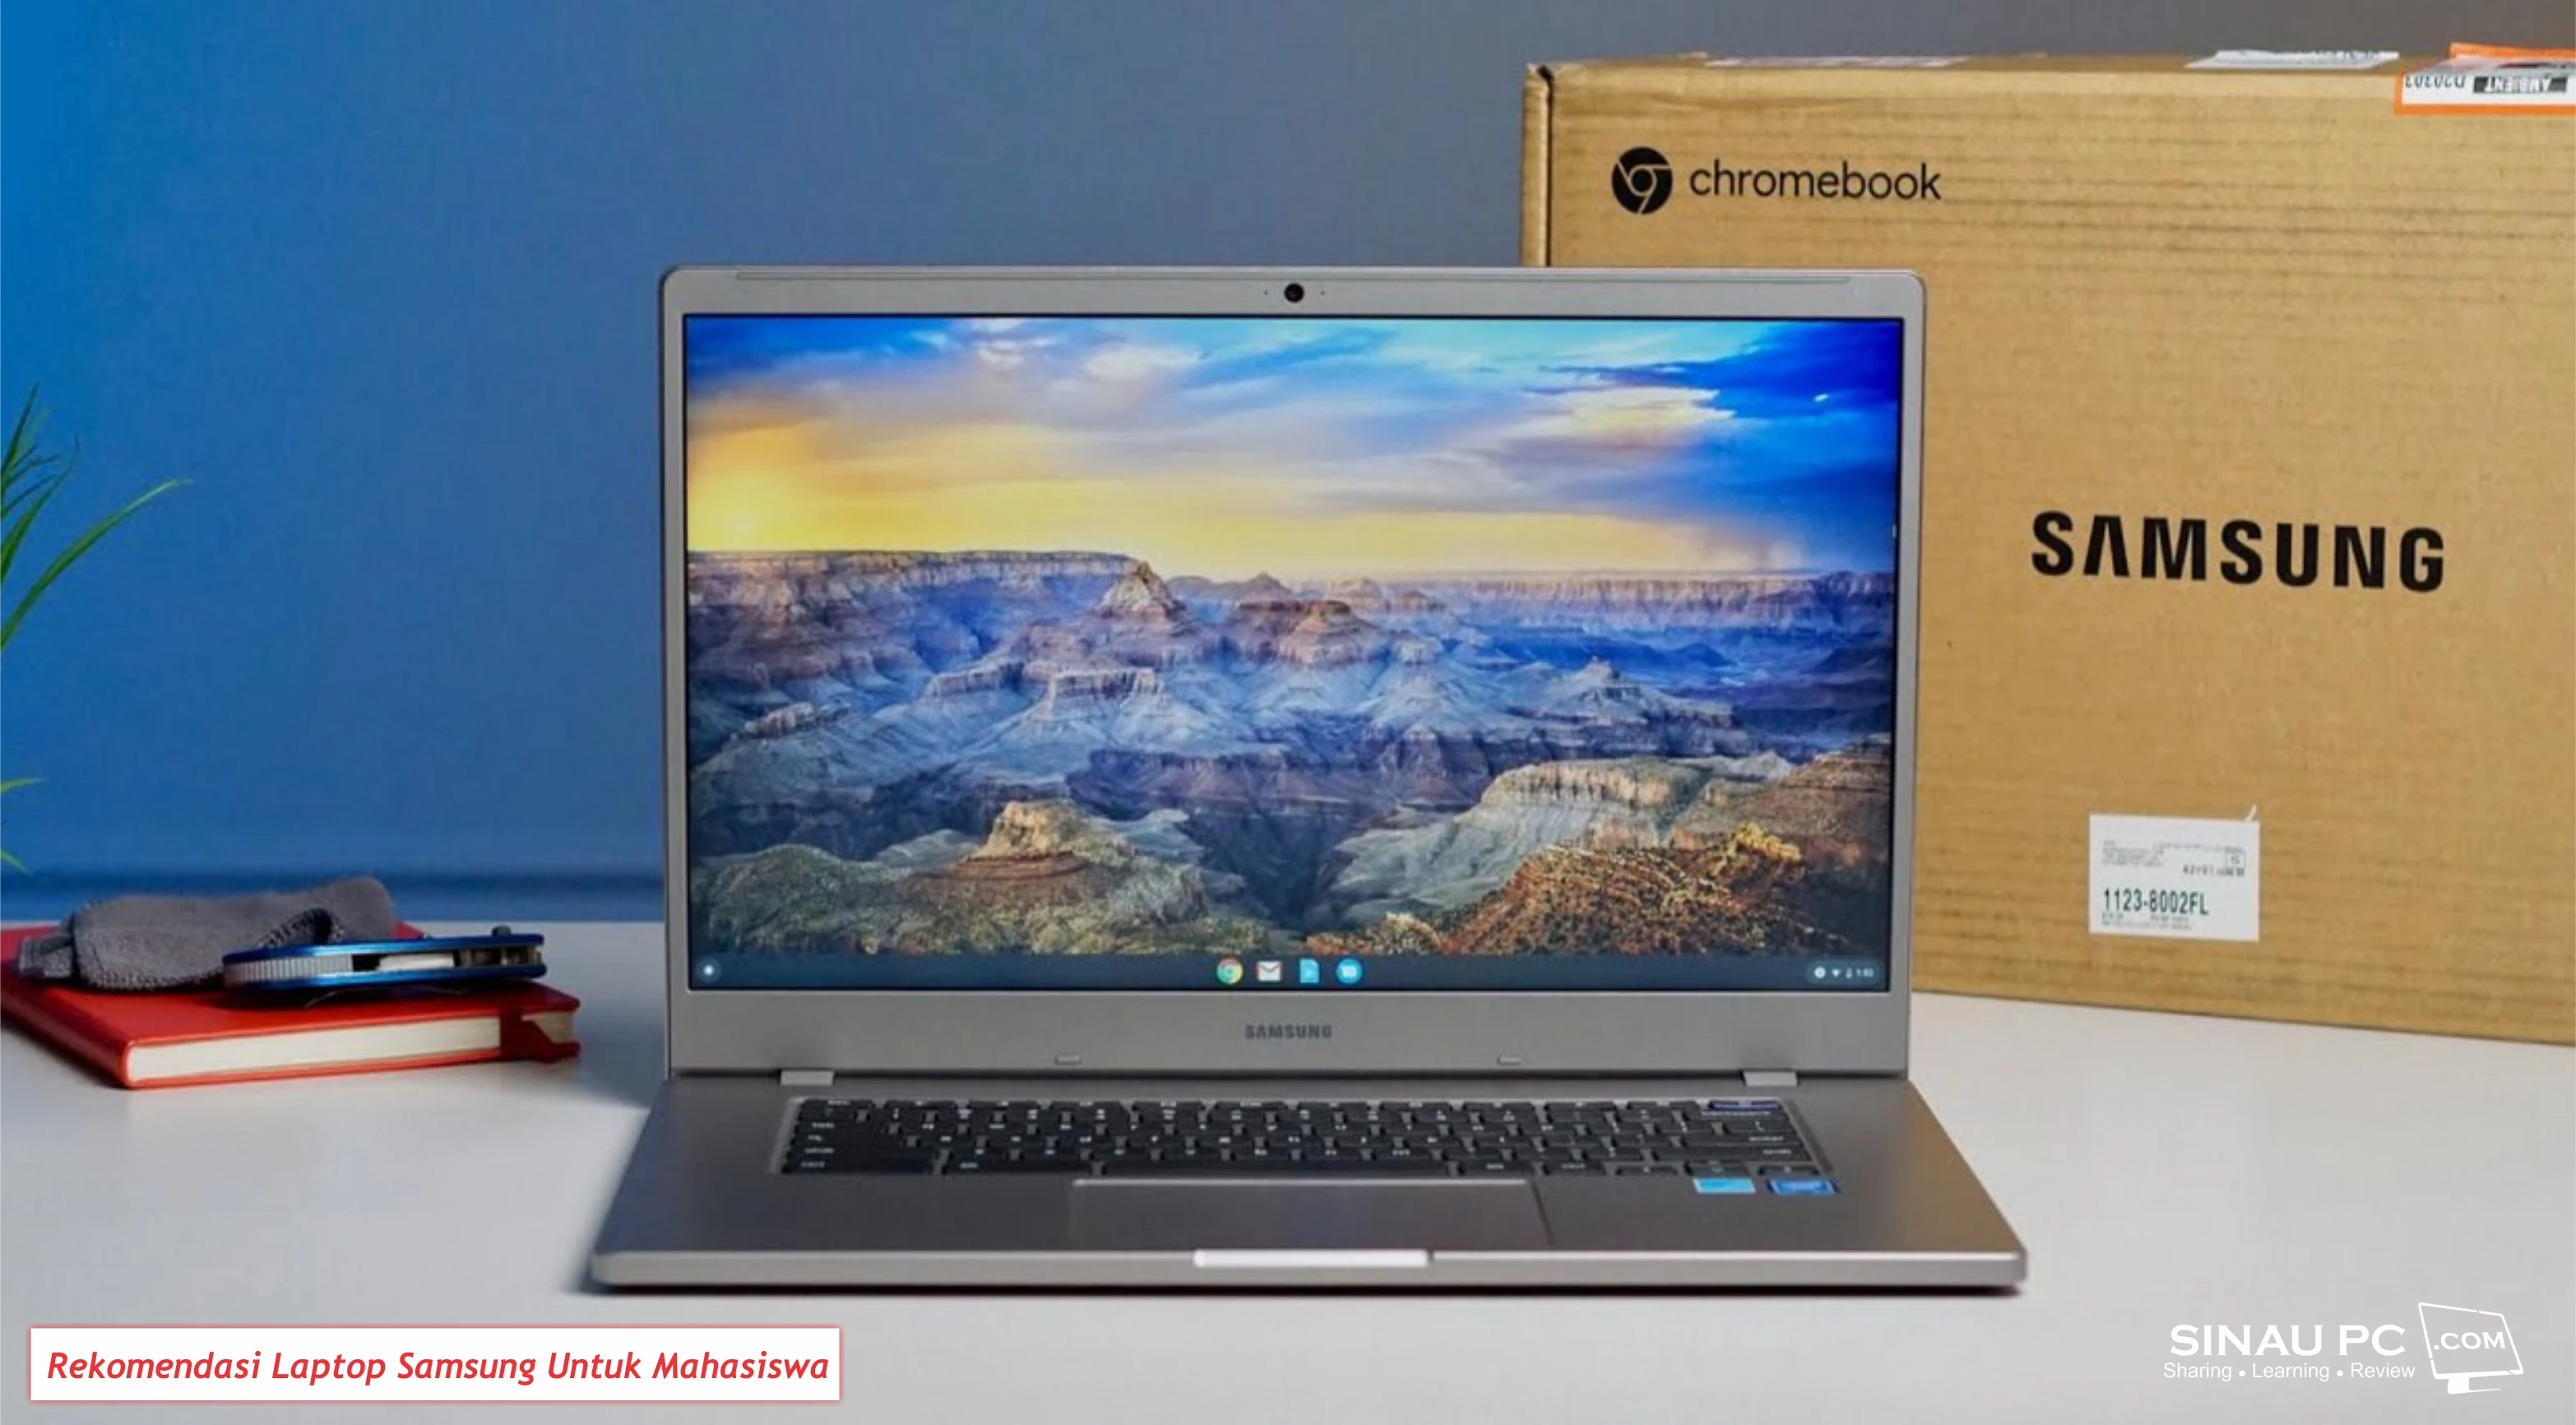 Rekomendasi Laptop Samsung Untuk Mahasiswa dan Pelajar Murah